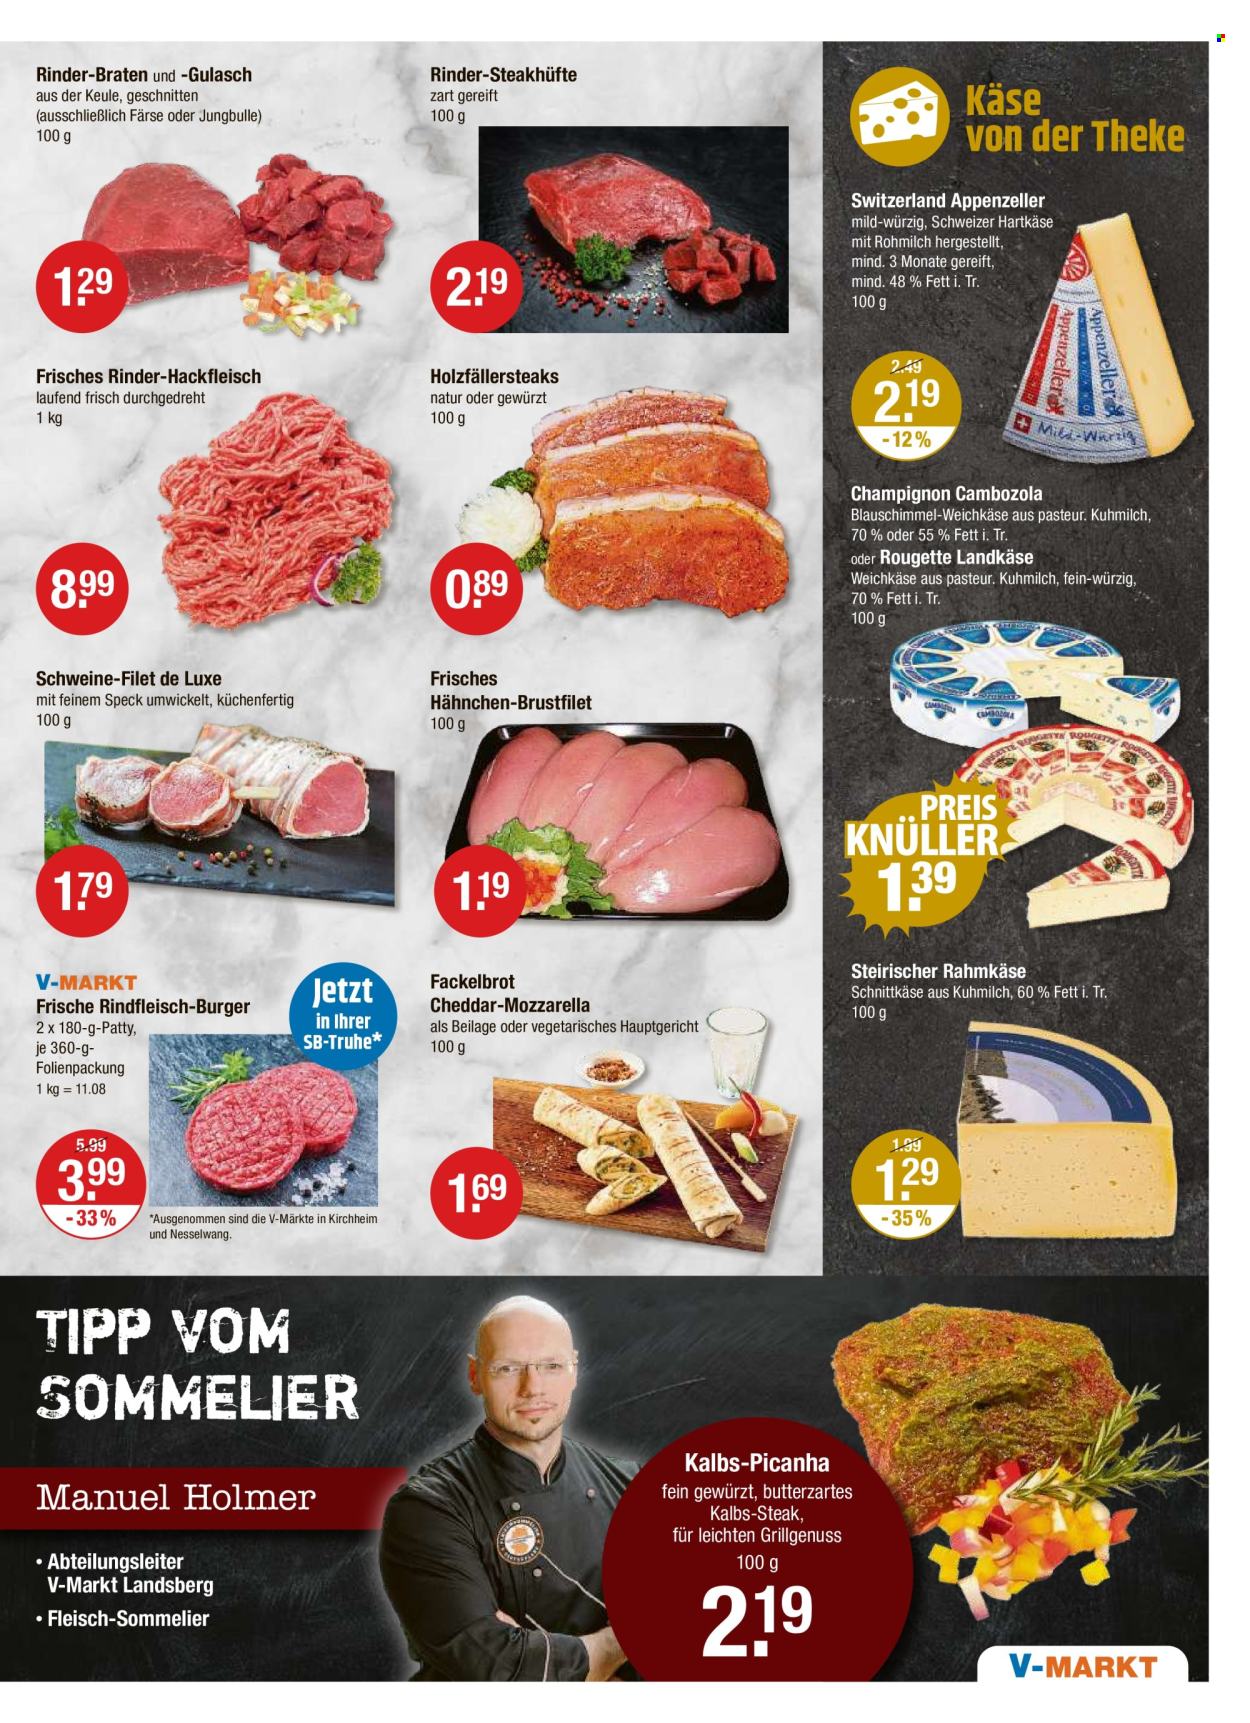 thumbnail - Prospekte V-Markt - 2.05.2024 - 8.05.2024 - Produkte in Aktion - Steak, Hähnchenbrustfilet, Brustfilet, Hähnchenfleisch, Rinderbraten, Rinderkeule, Rindfleisch, Hüftsteak, Rinderhackfleisch, Gulasch, Hackfleisch, Burger, Schweinefleisch, Schweinefilet, Brot, Speck, Käse, Weichkäse, Schnittkäse, Rougette, Cheddar, Mozzarella, Hartkäse, Cambozola, Appenzeller. Seite 3.